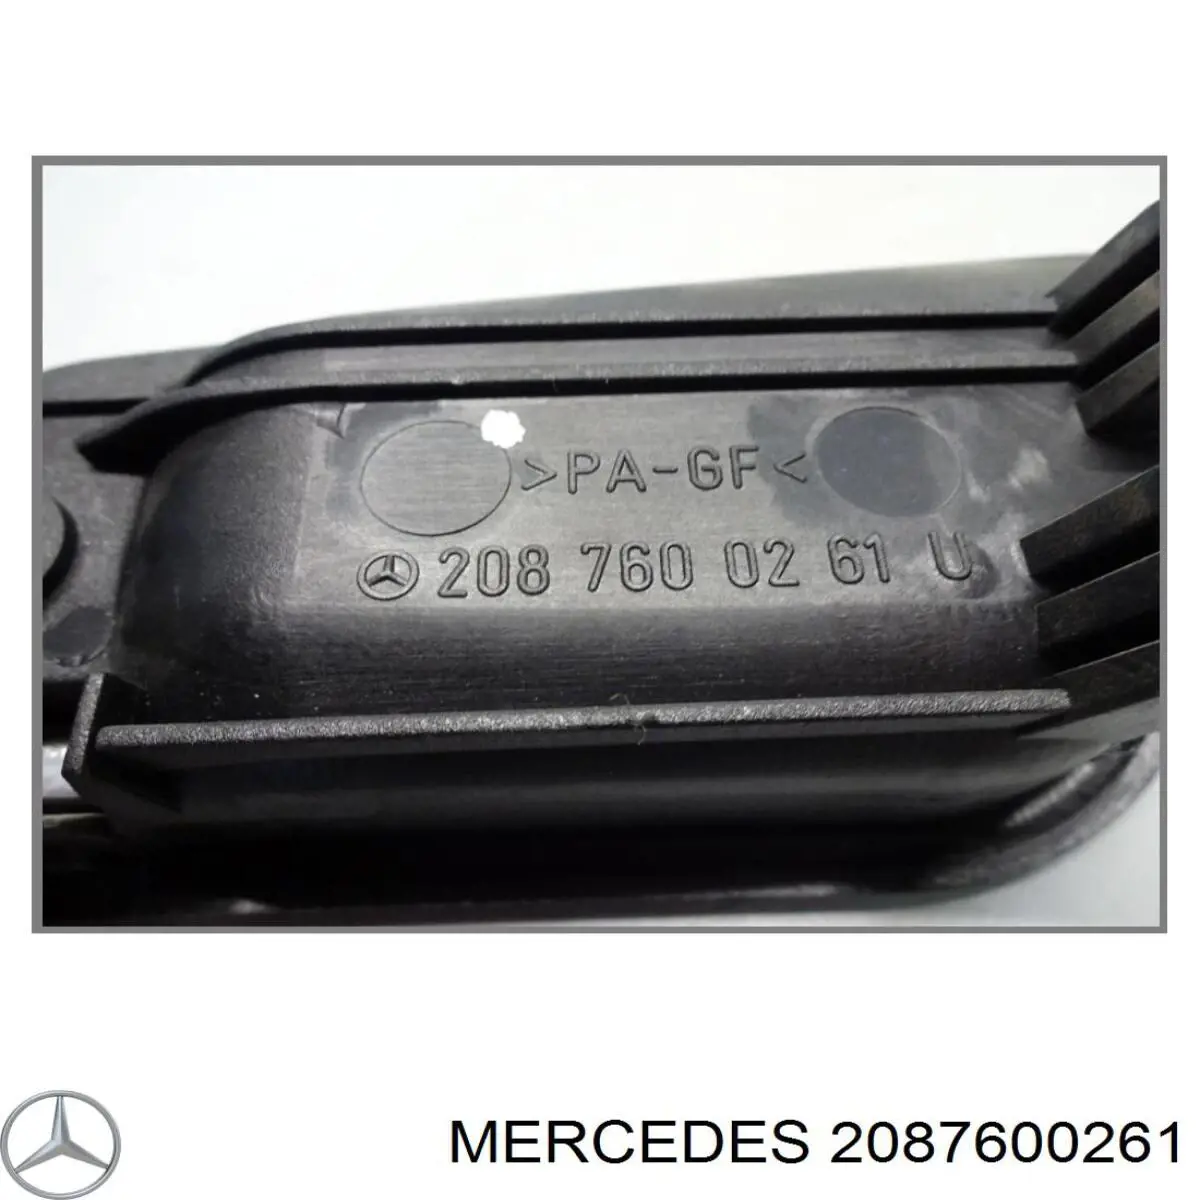 Manecilla de puerta, equipamiento habitáculo, delantera derecha para Mercedes CLK (C208)